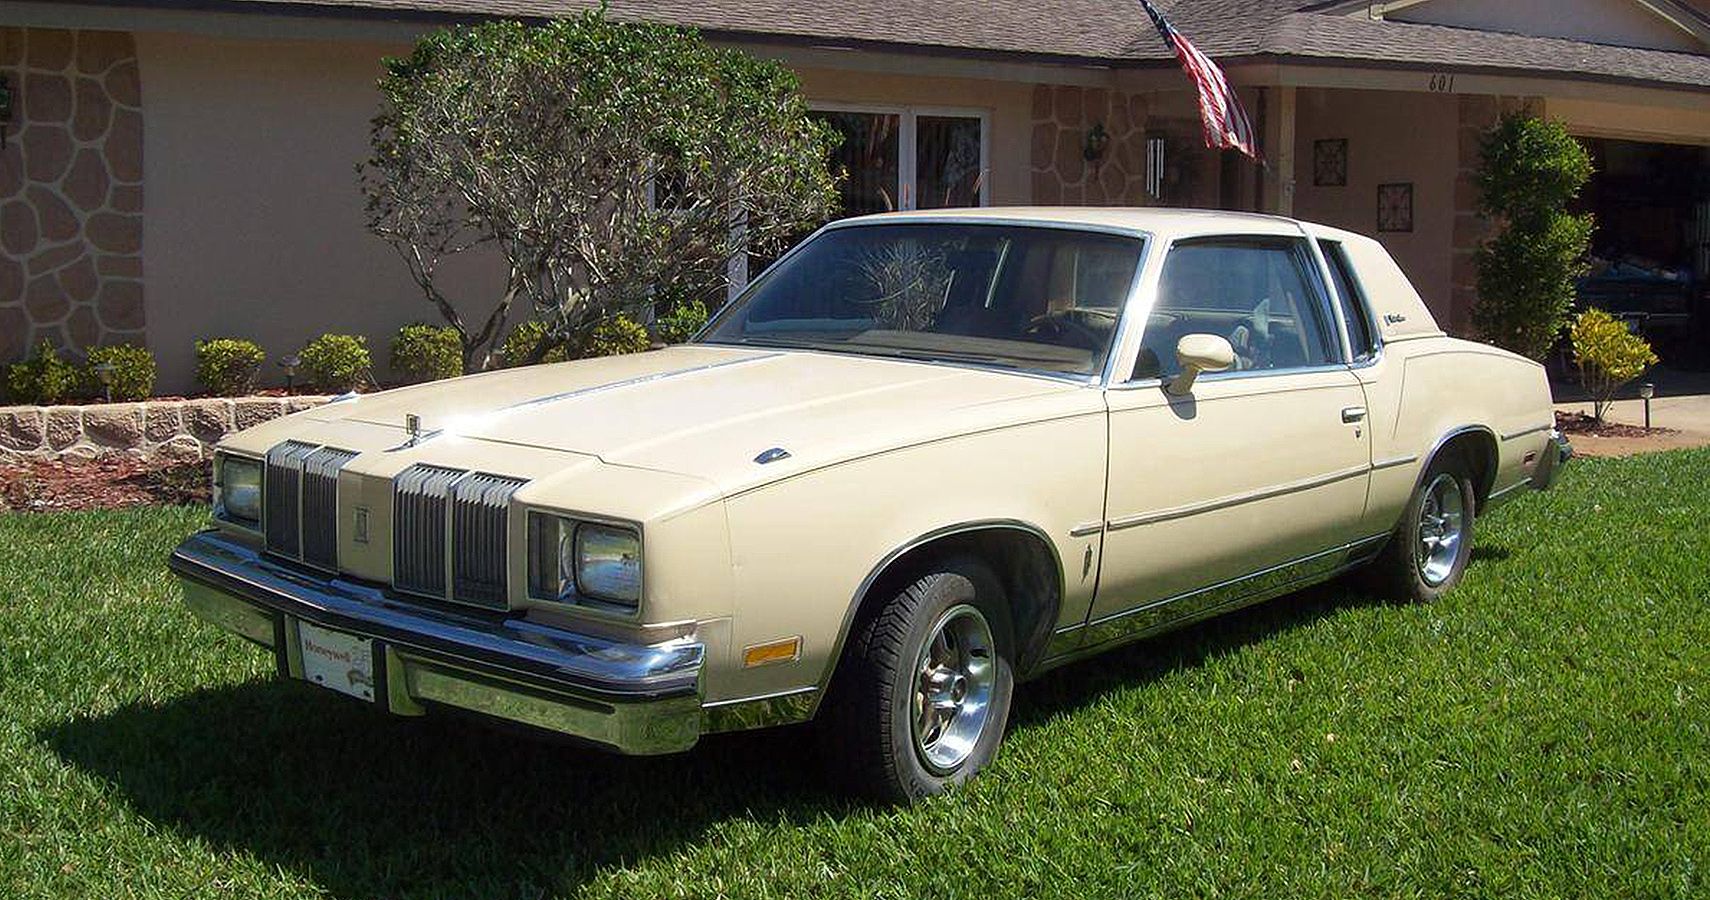 The Bad Olds: 1979 Oldsmobile Cutlass Supreme Diesel, Diesel Problems